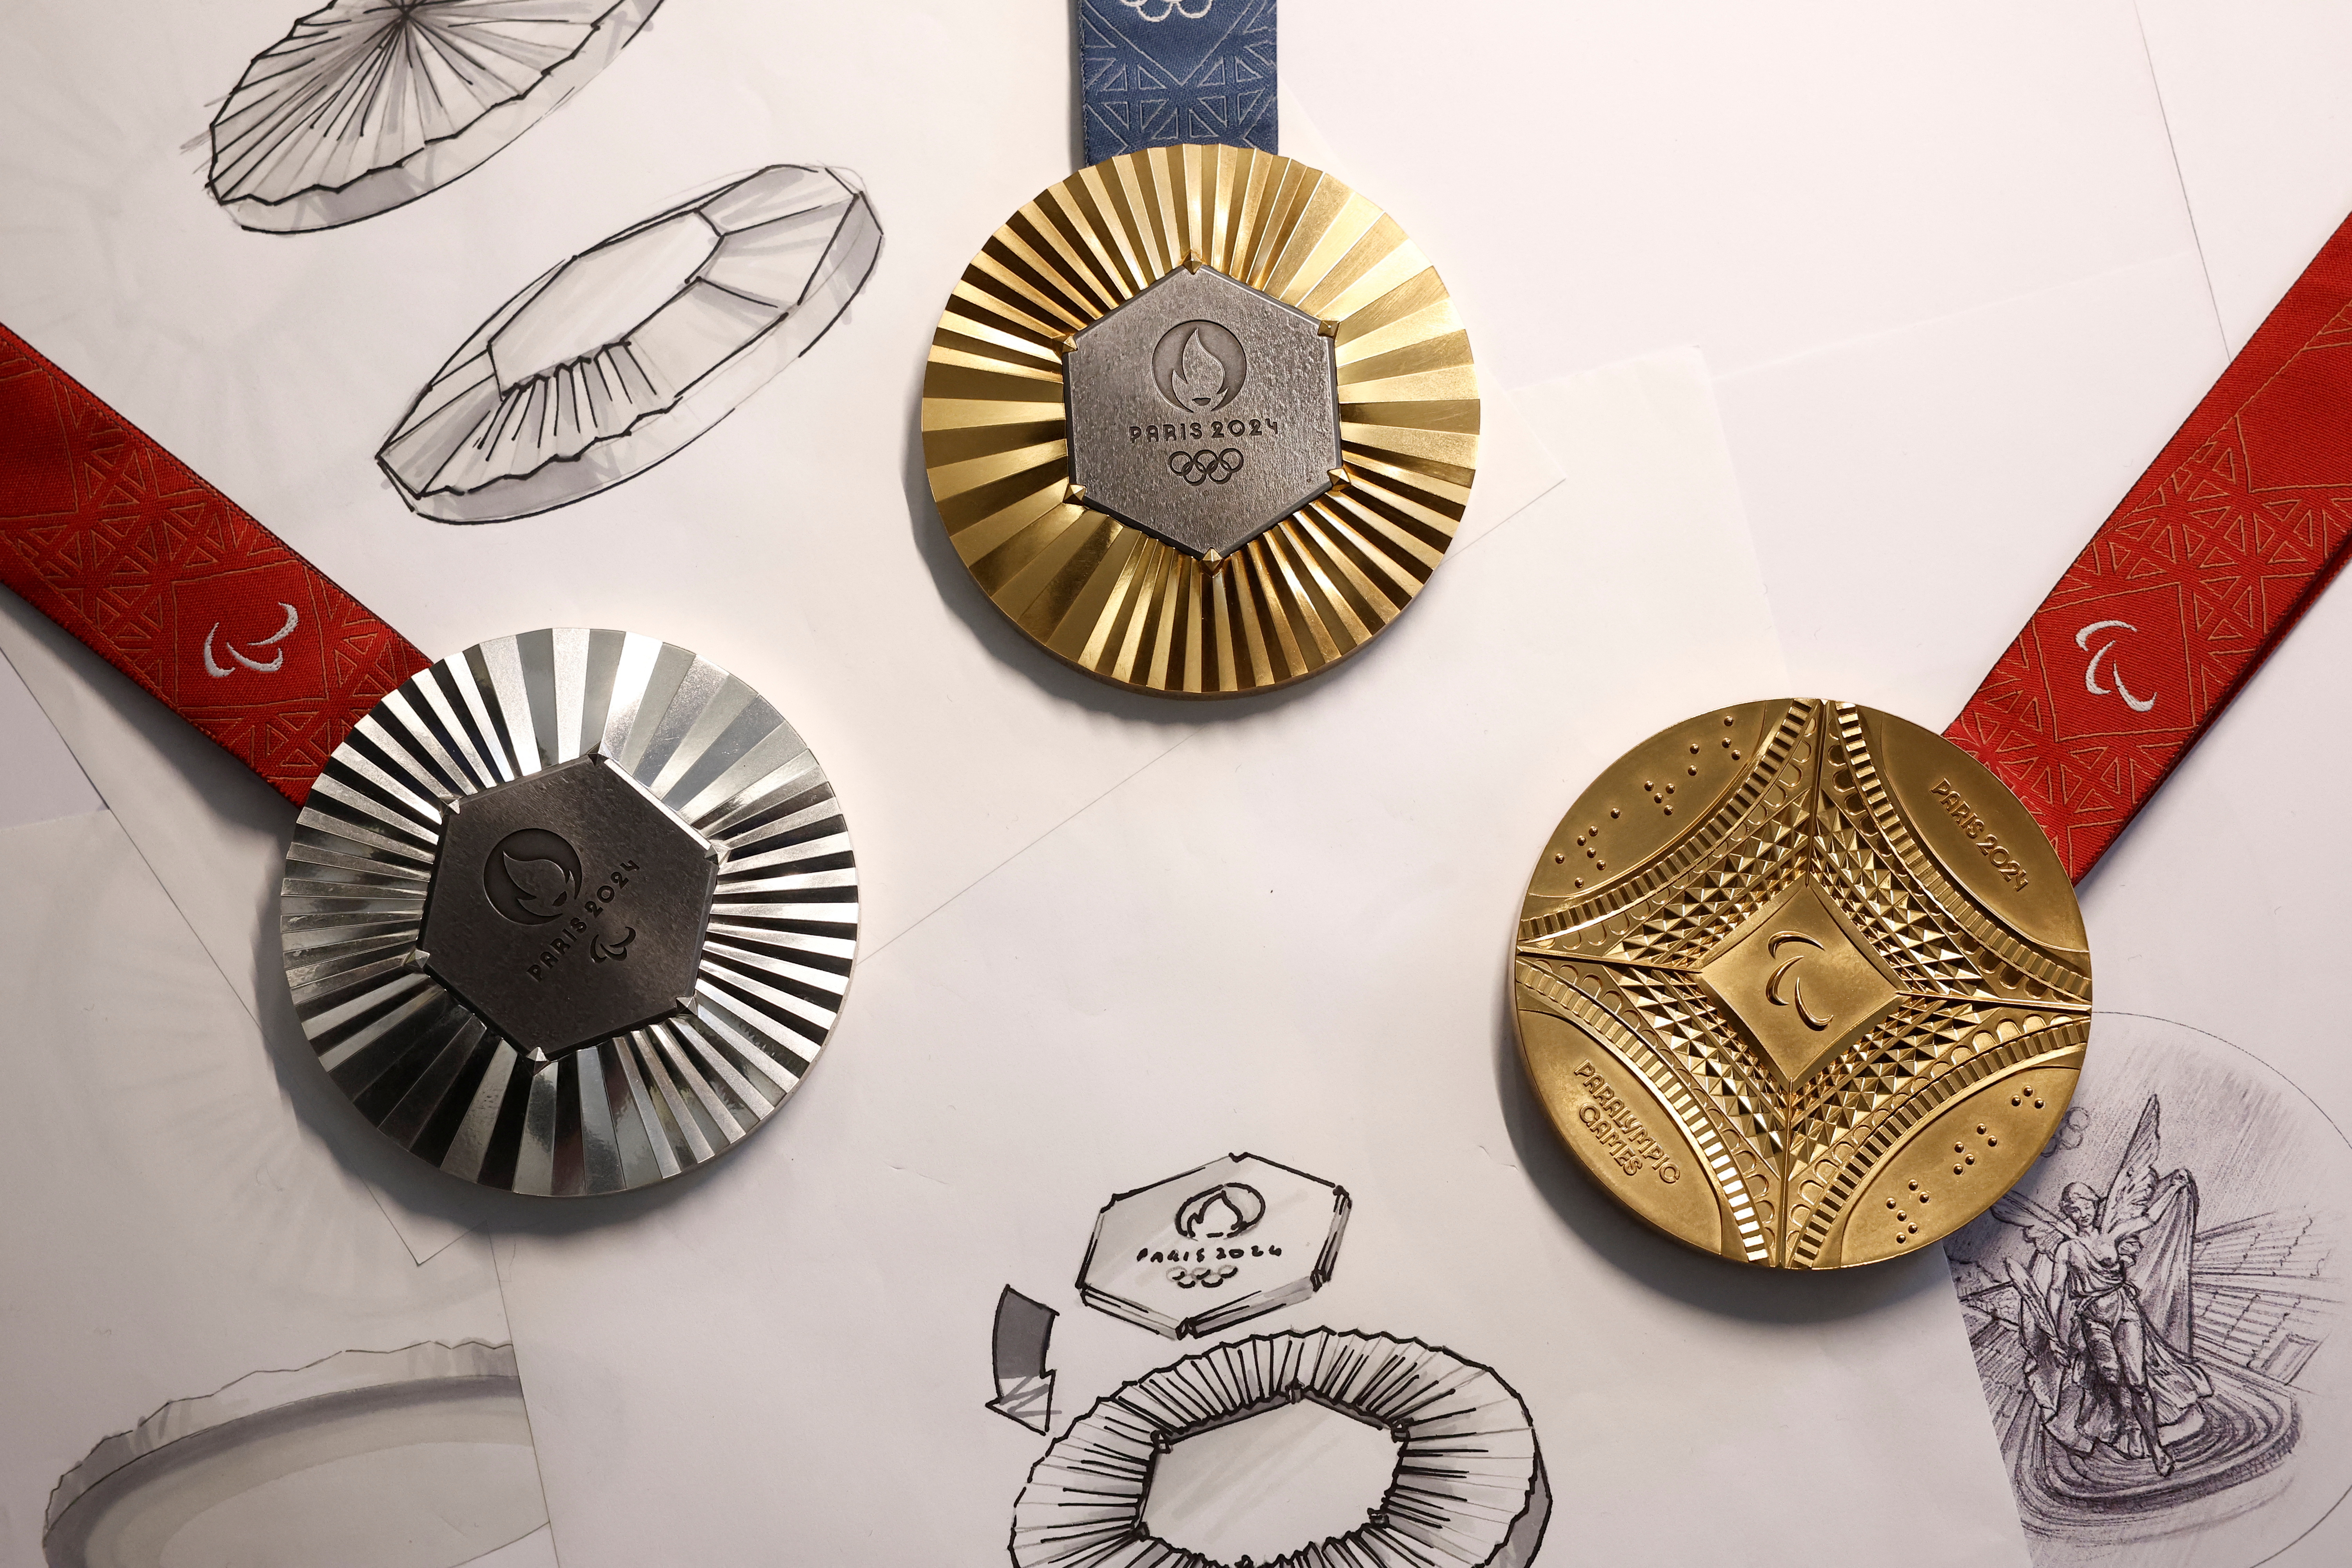 パリ五輪、メダルのデザイン発表 エッフェル塔の鉄を使用 | ロイター